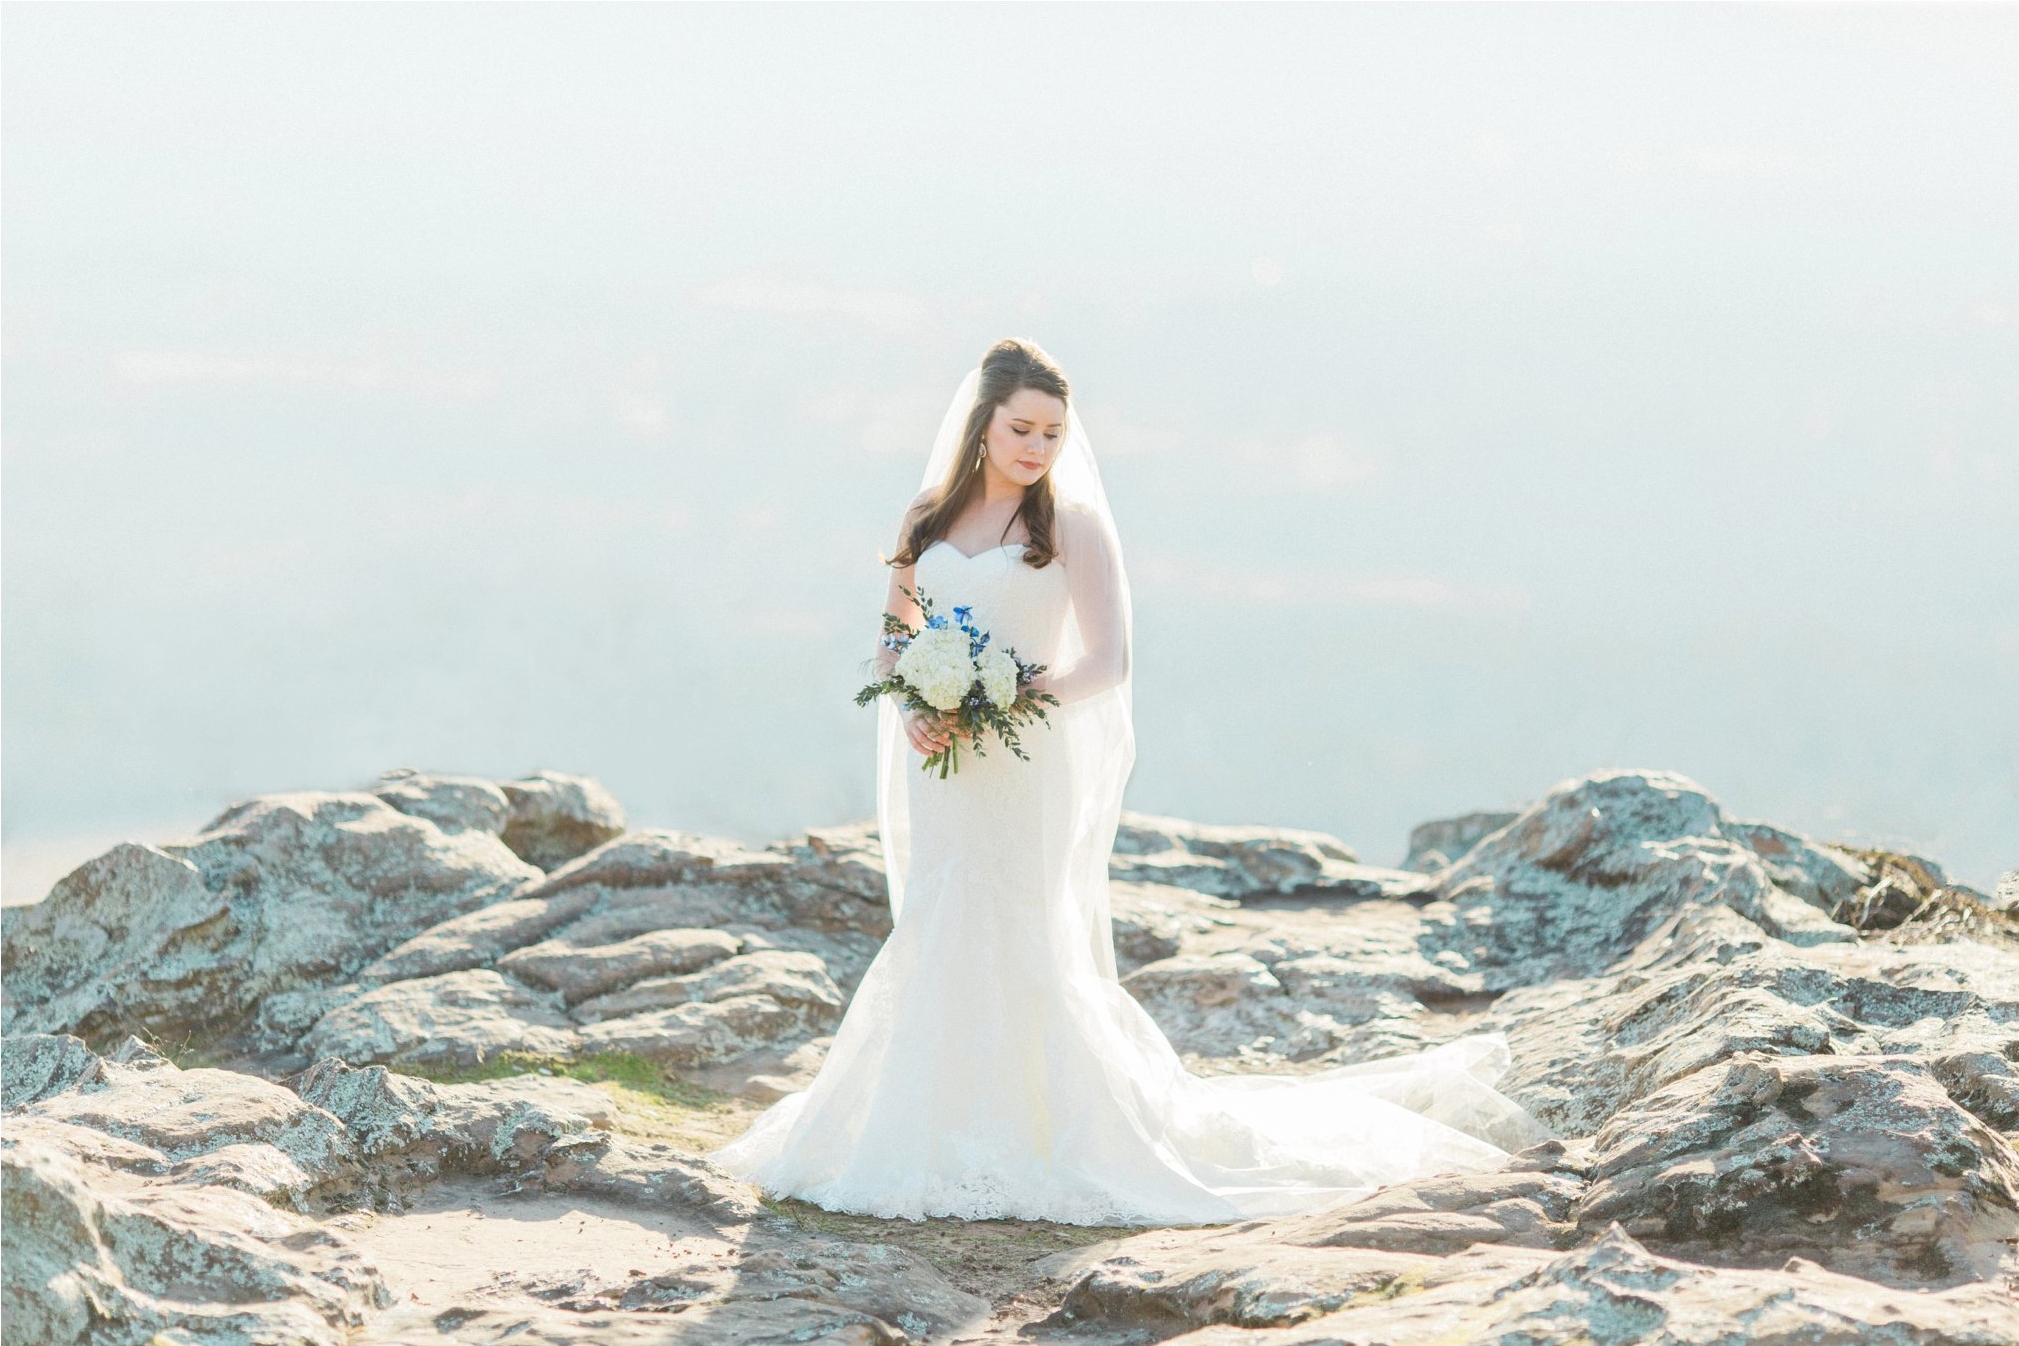 Petit Jean Mountain Bridal Photos | Regan